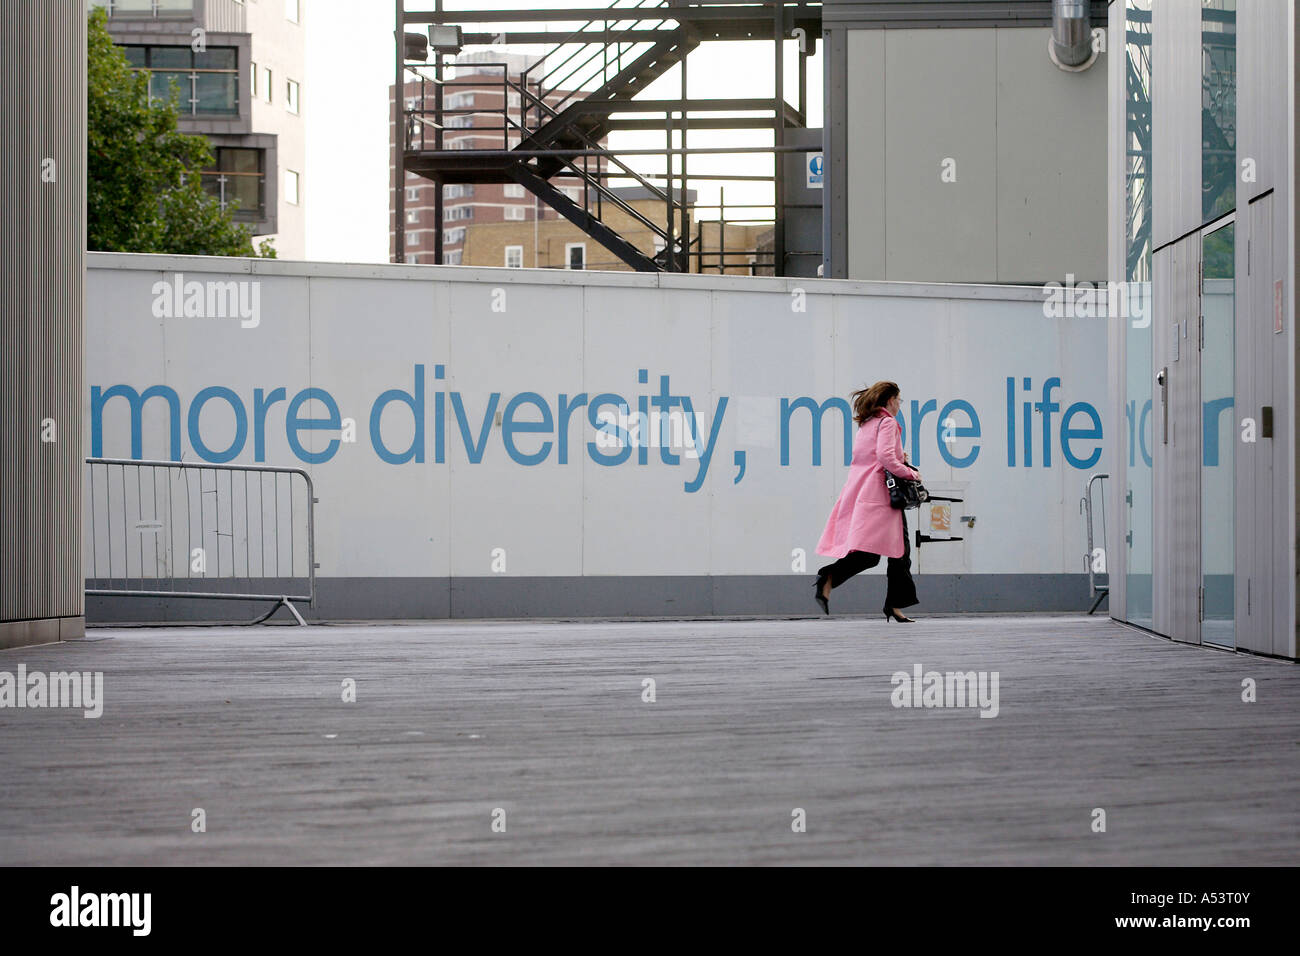 Más diversidad, más vida y una mujer caminando, Londres, Gran Bretaña Foto de stock